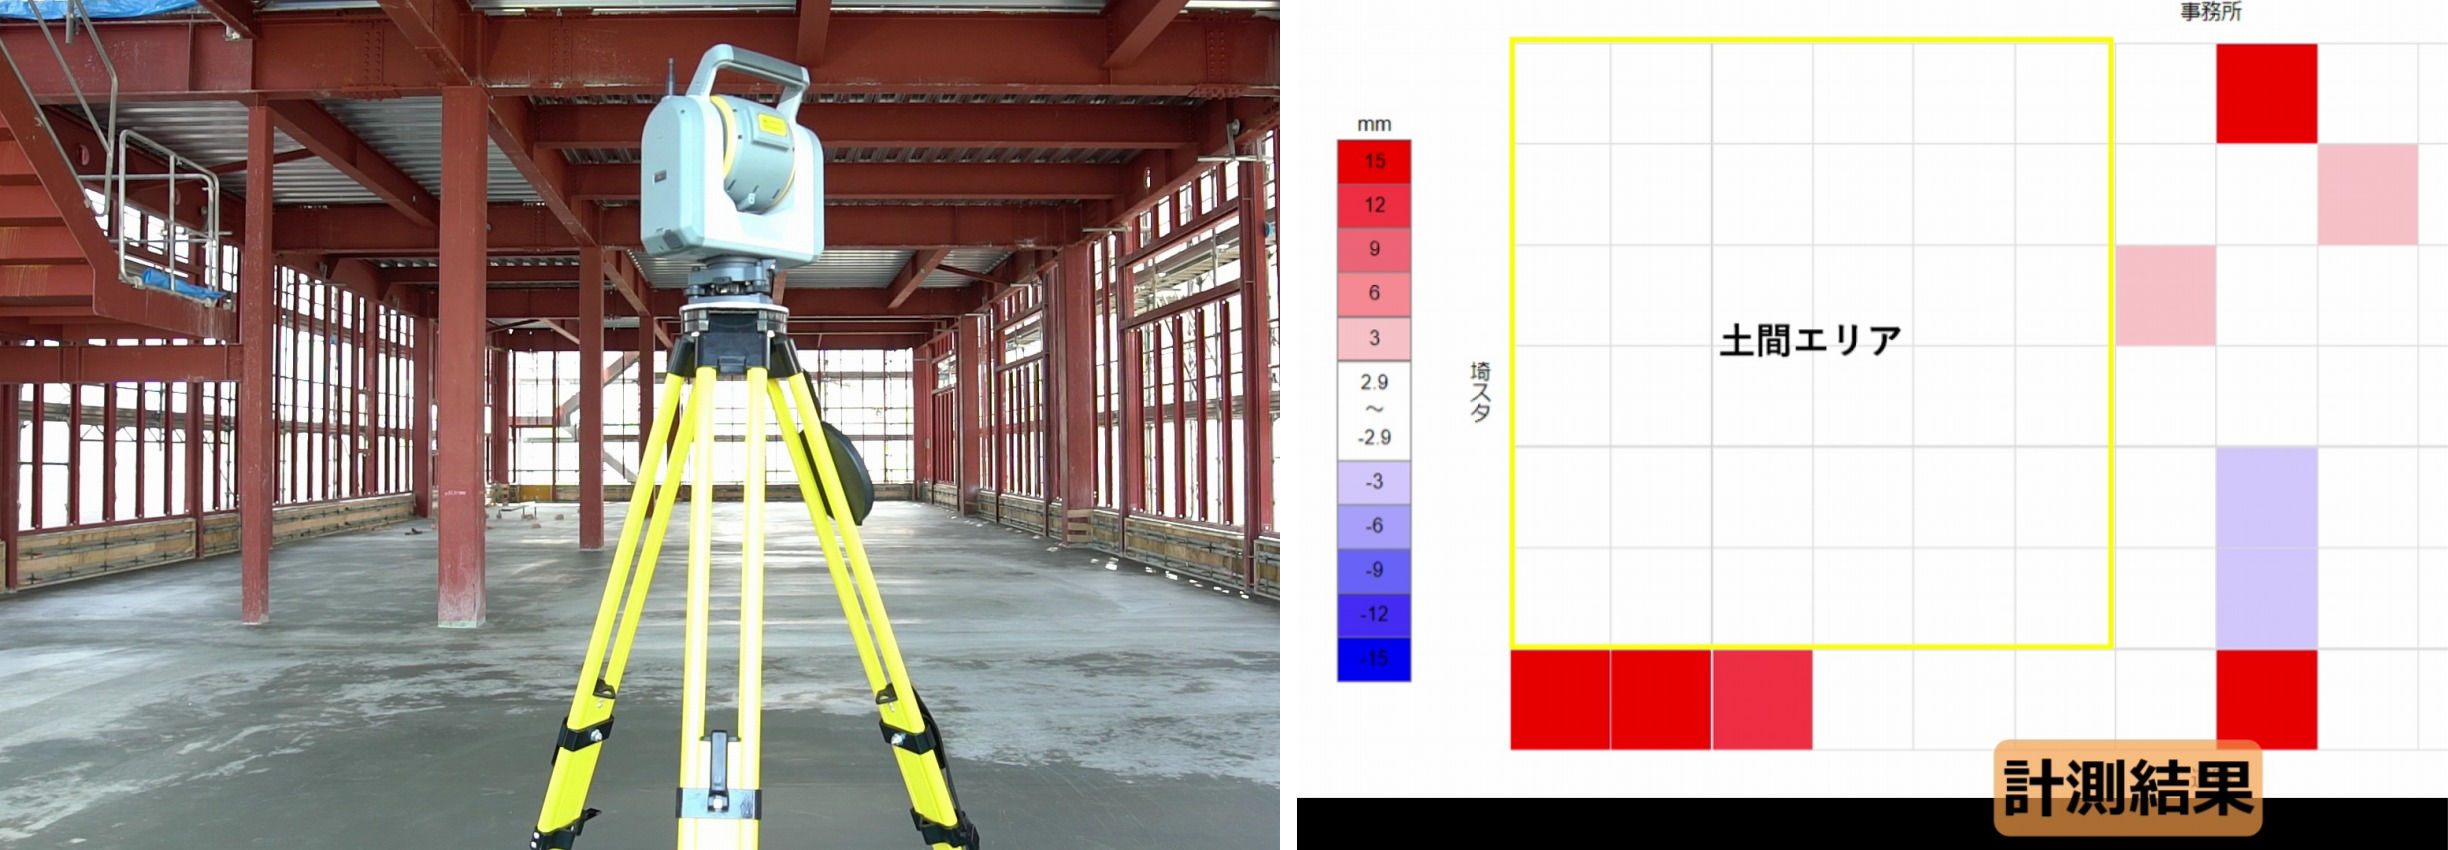 3Dレーザースキャナーによる床の計測（左）。計測結果はヒートマップによってクラウド共有された（右）